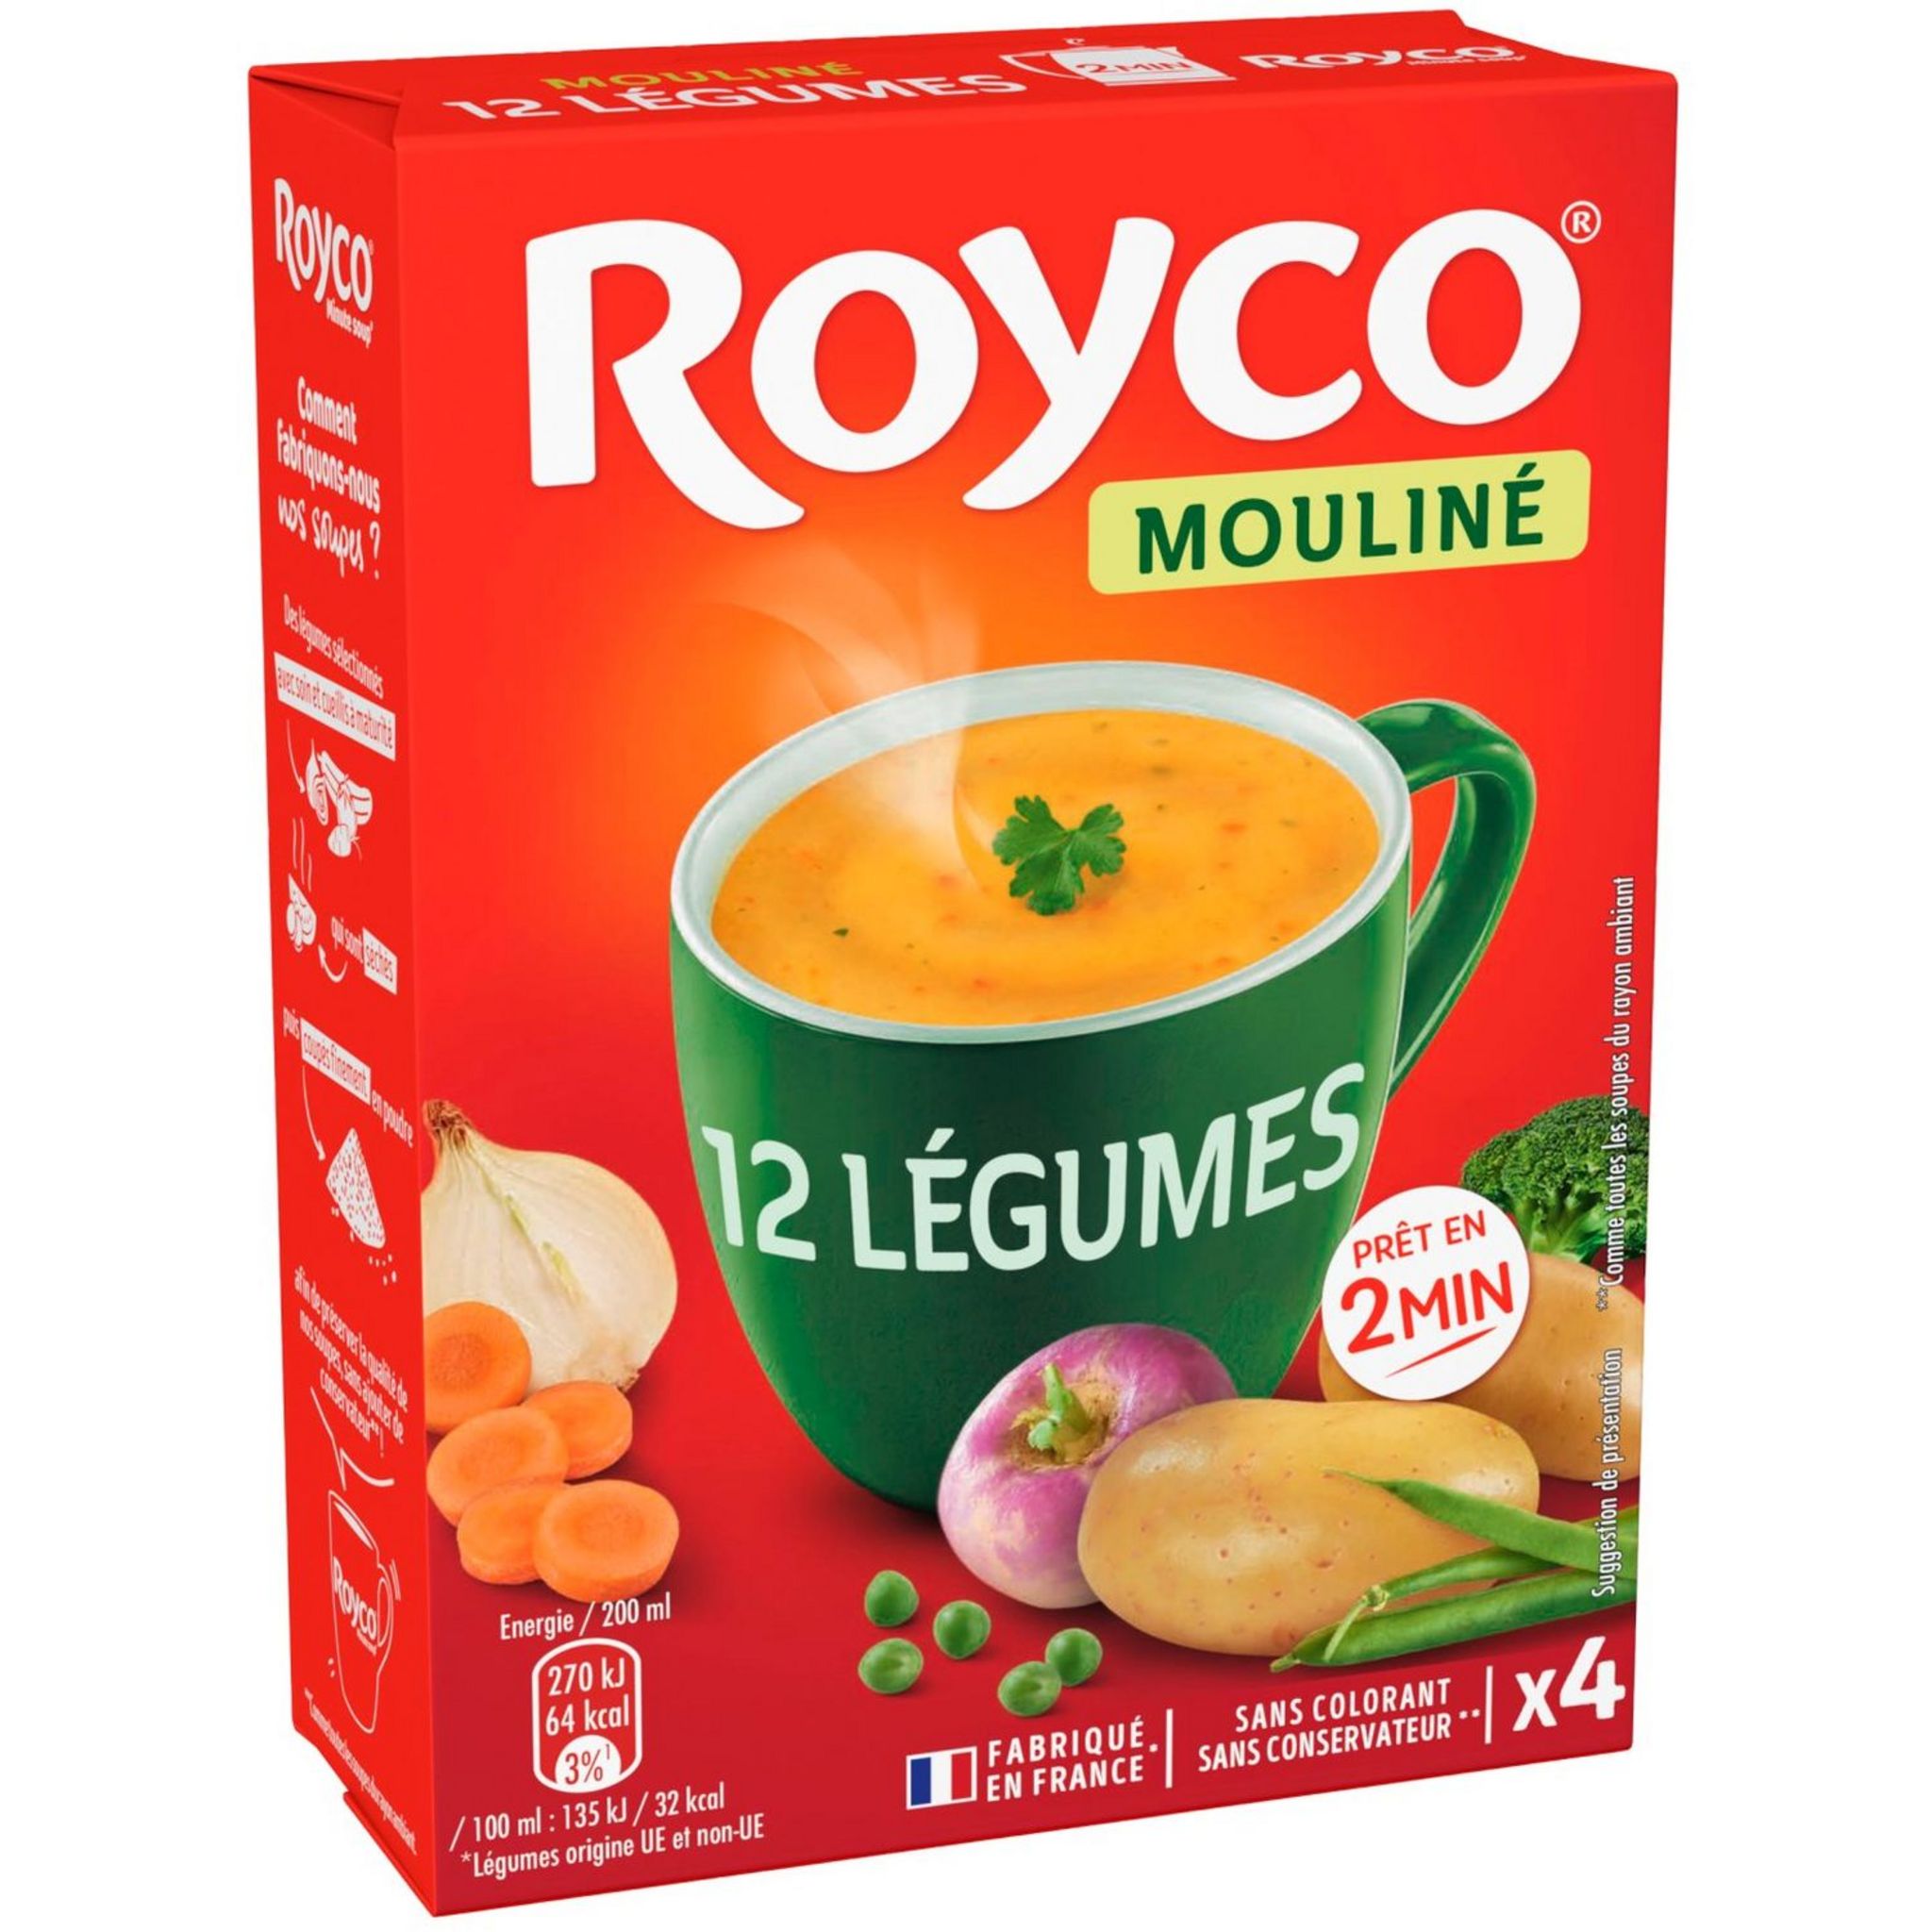 ROYCO Mouliné 12 légumes prêt en 2 min 4 sachets 80ml 72G – épicerie les 3  gourmets